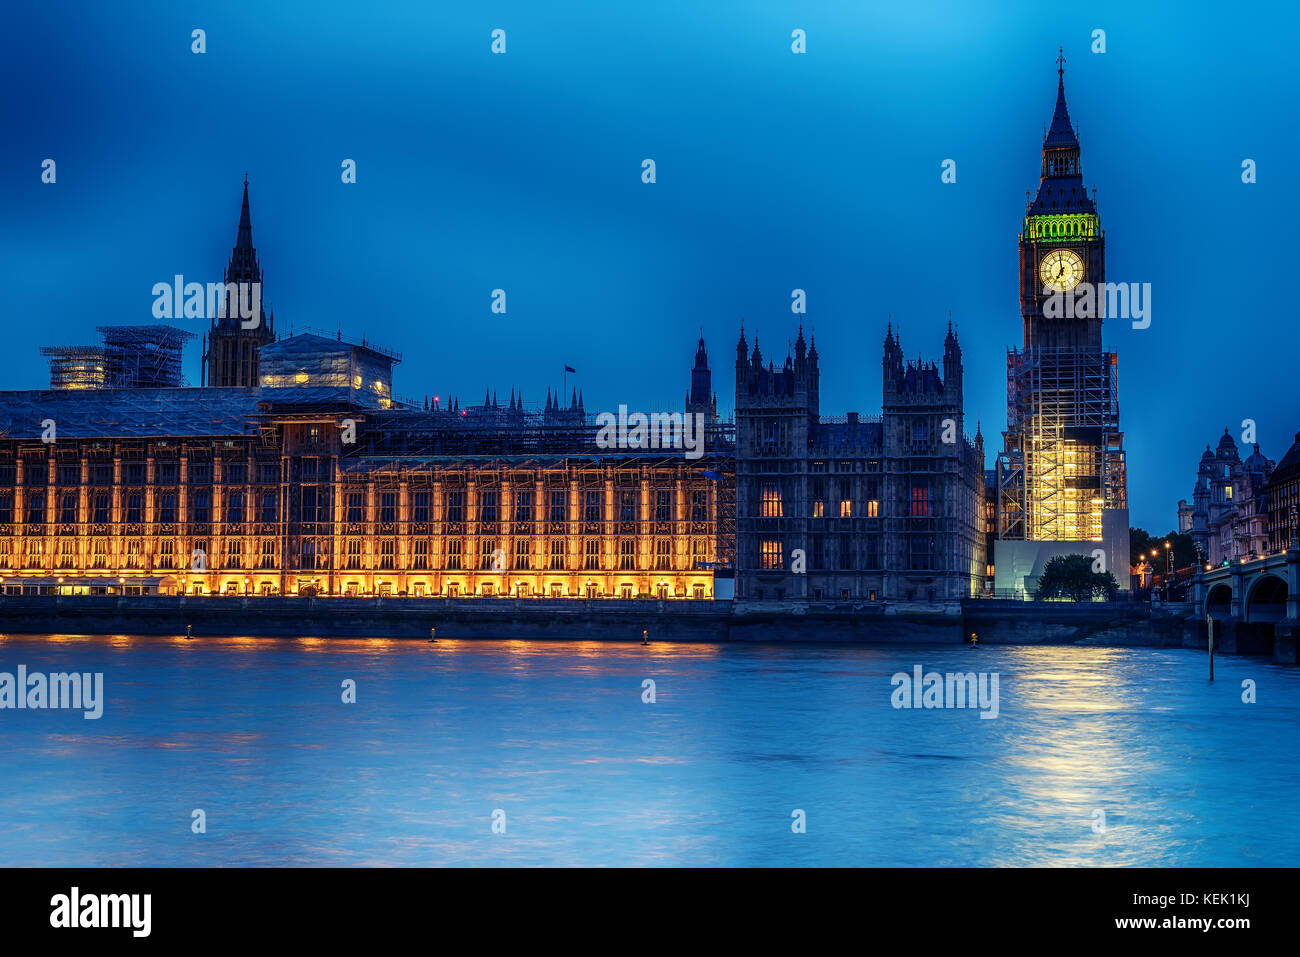 Londres, Royaume-Uni : le palais de Westminster avec Big Ben, elizabeth tower, vu de l'autre côté de la rivière Thames Banque D'Images